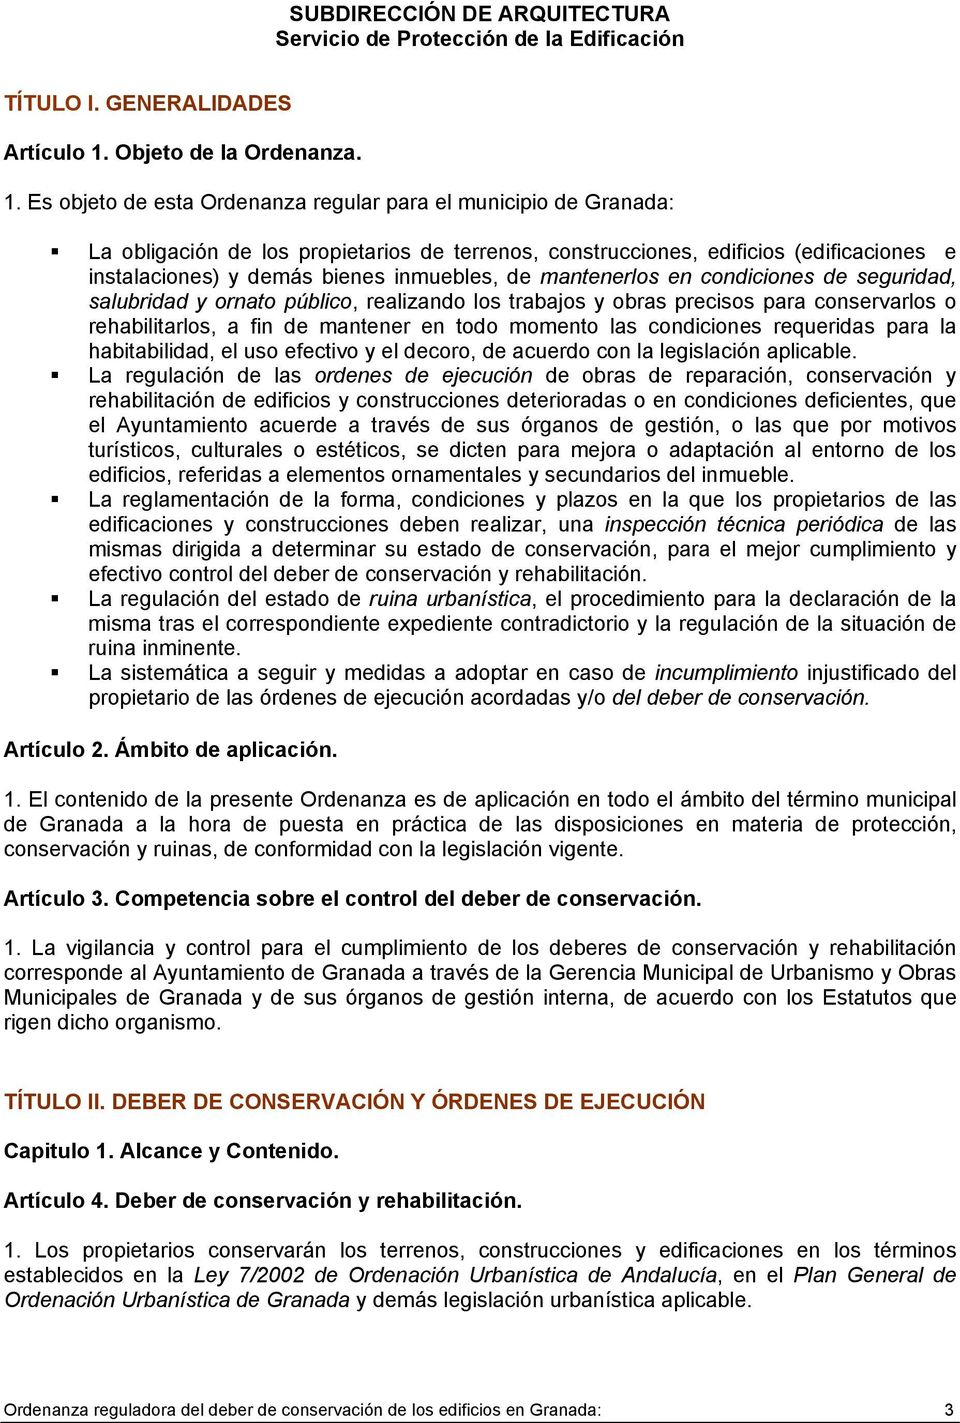 Es objeto de esta Ordenanza regular para el municipio de Granada: La obligación de los propietarios de terrenos, construcciones, edificios (edificaciones e instalaciones) y demás bienes inmuebles, de